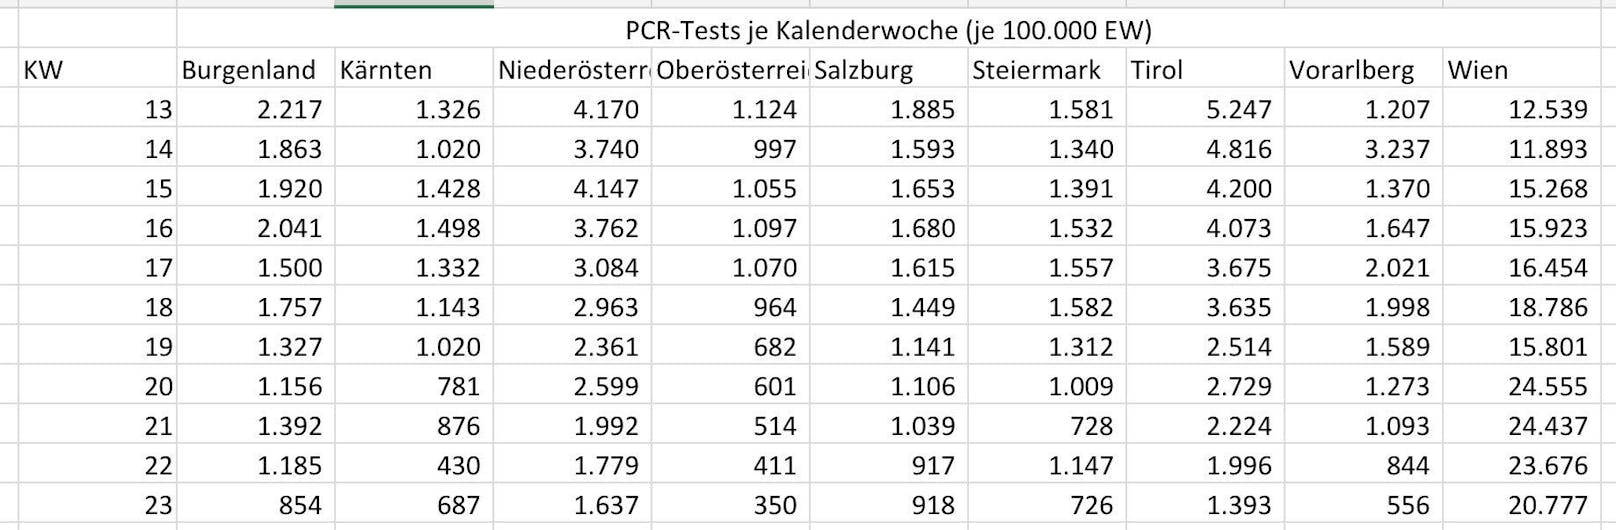 Der Bundesländer-Vergleich in Zahlen zeigt: Während in Wien wieder mehr PCR-Tests gemacht werden, sinkt die Zahl in allen anderen Bundesländern.